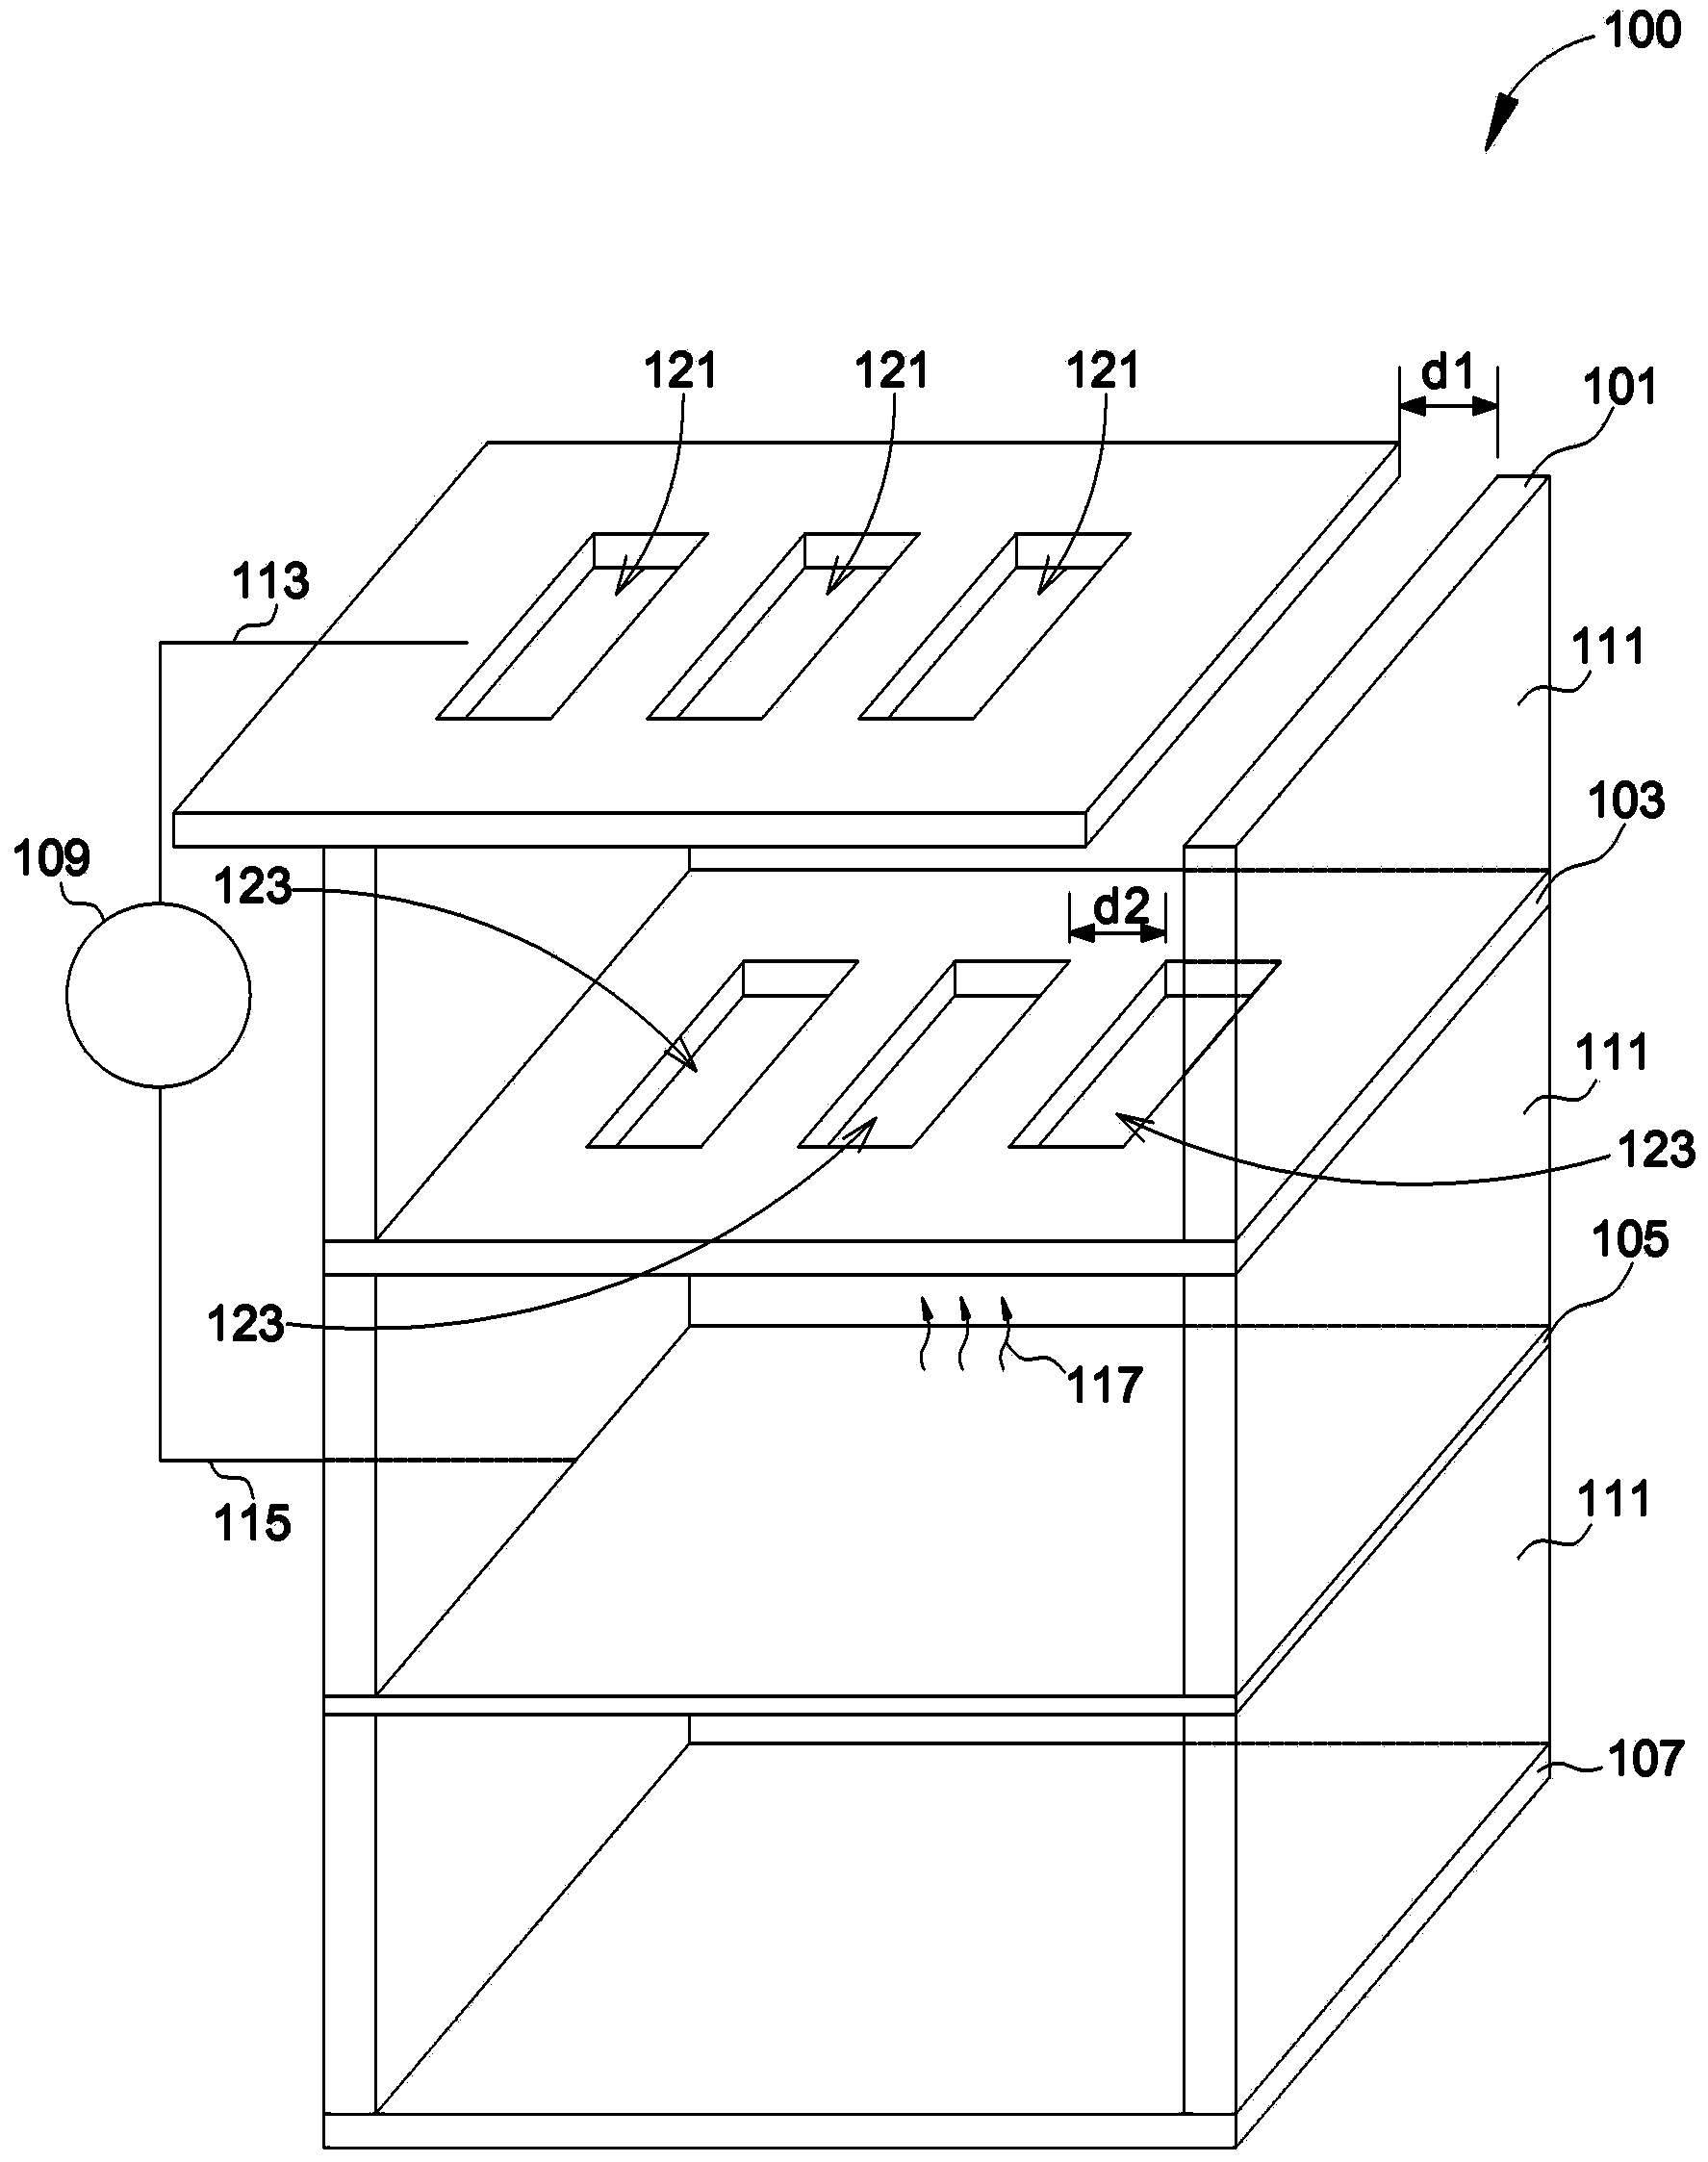 Techniques for generating audio signals